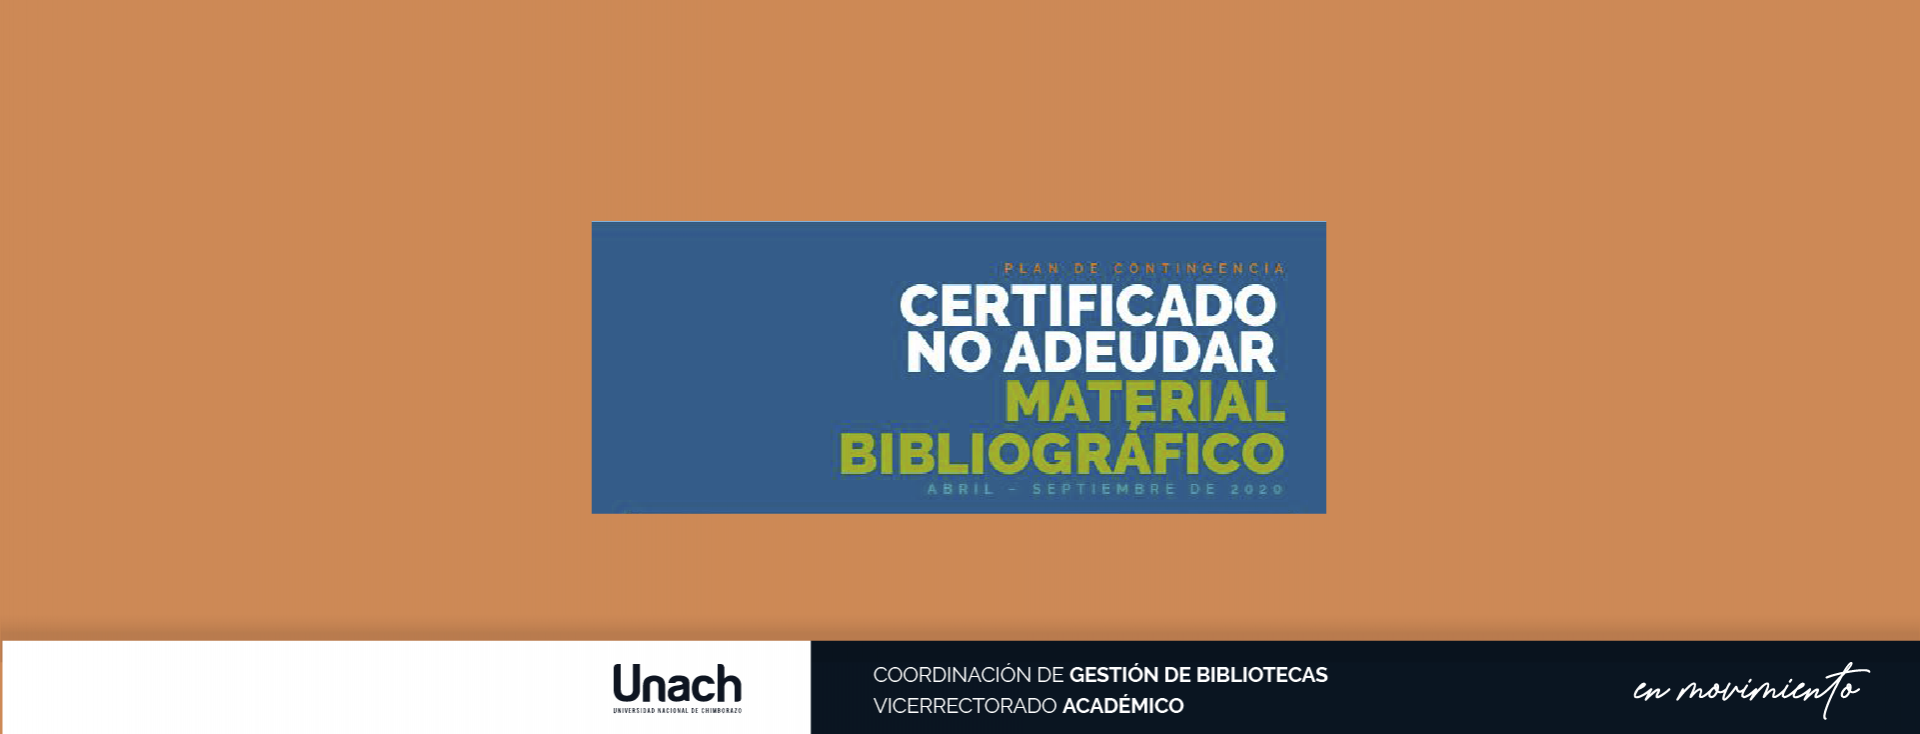 CERTIFICADO DE NO ADEUDAR MATERIAL BIBLIOGRÁFICO